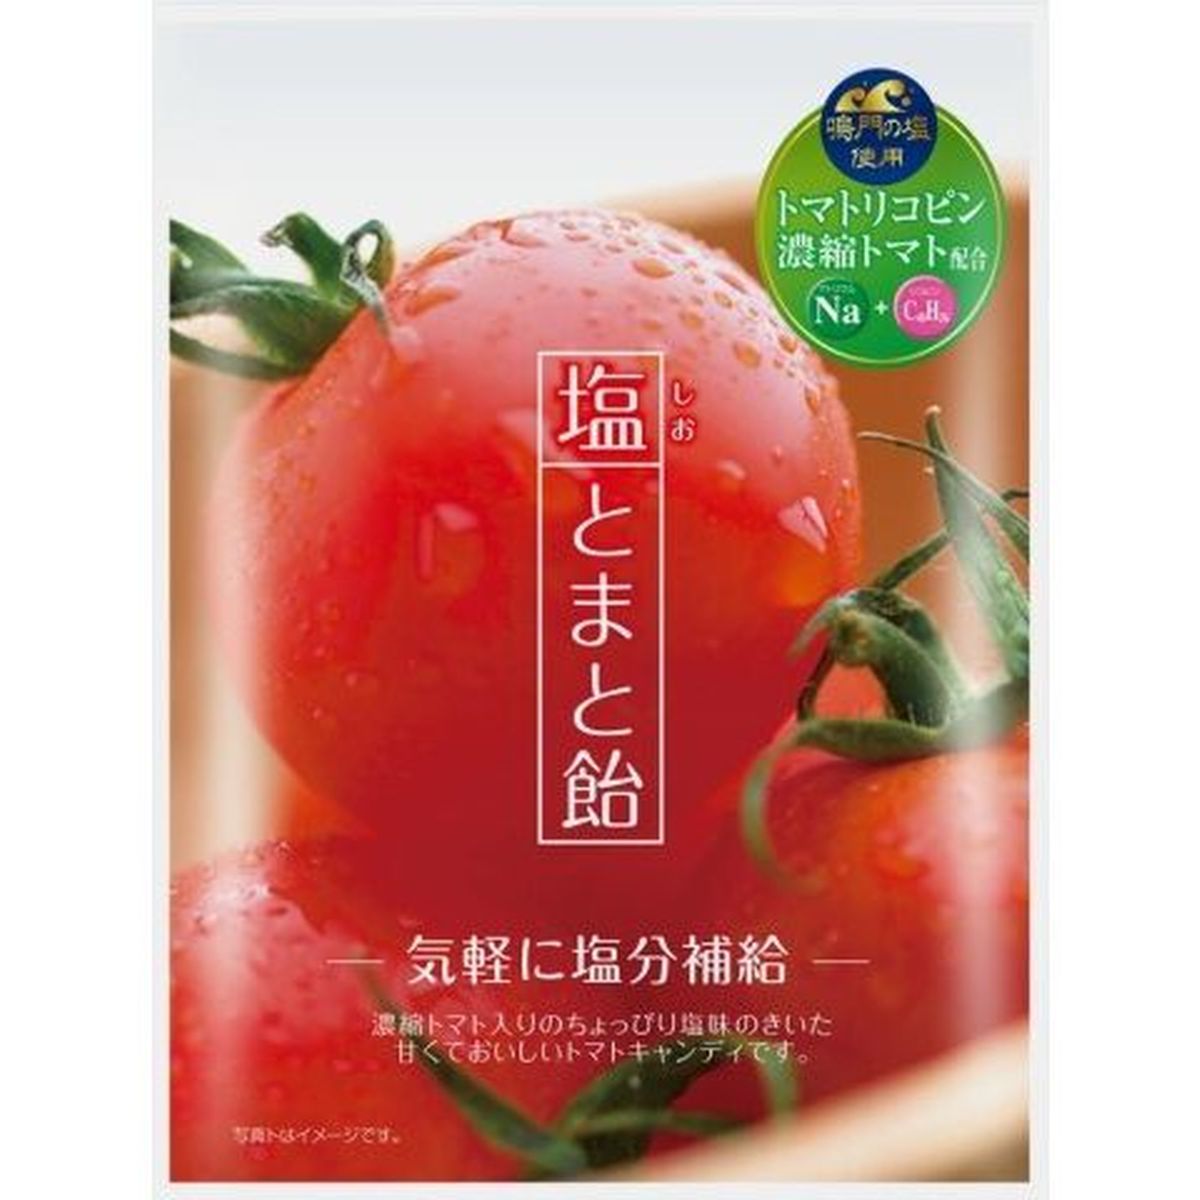 【10個入リ】加藤製菓 塩トマト飴 70g